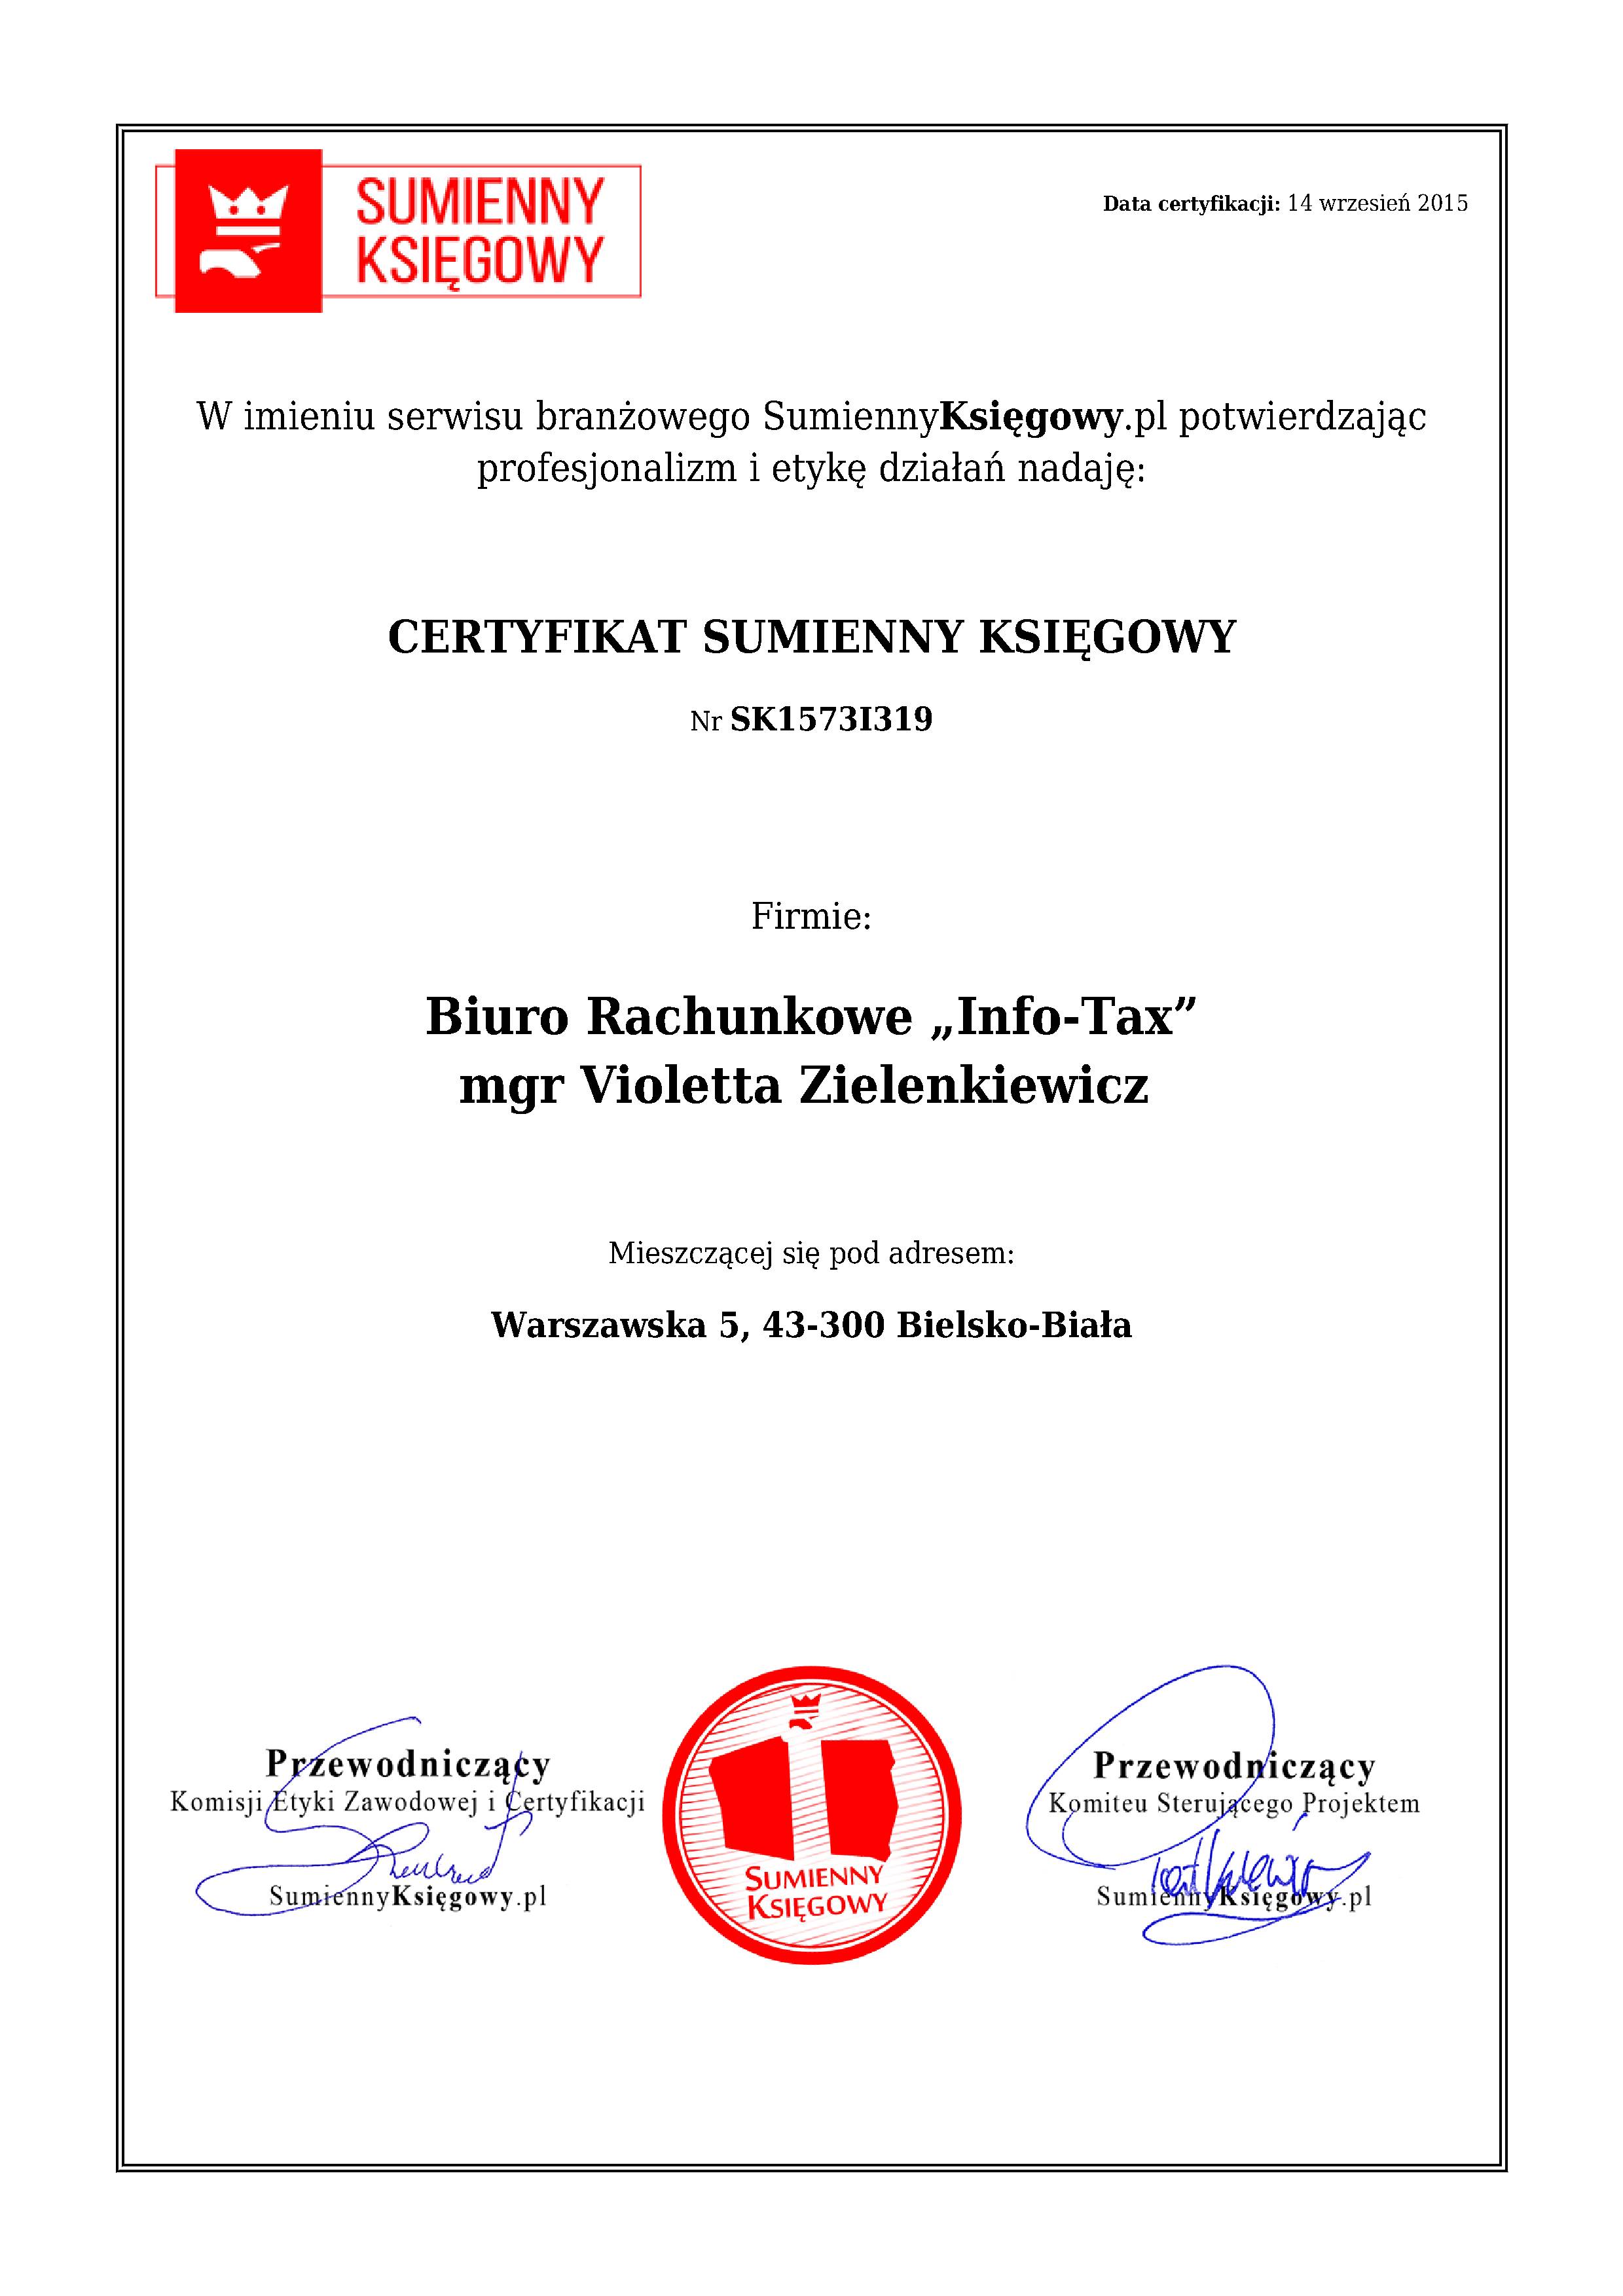 Certyfikat Biuro Rachunkowe „Info-Tax” mgr Violetta Zielenkiewicz 